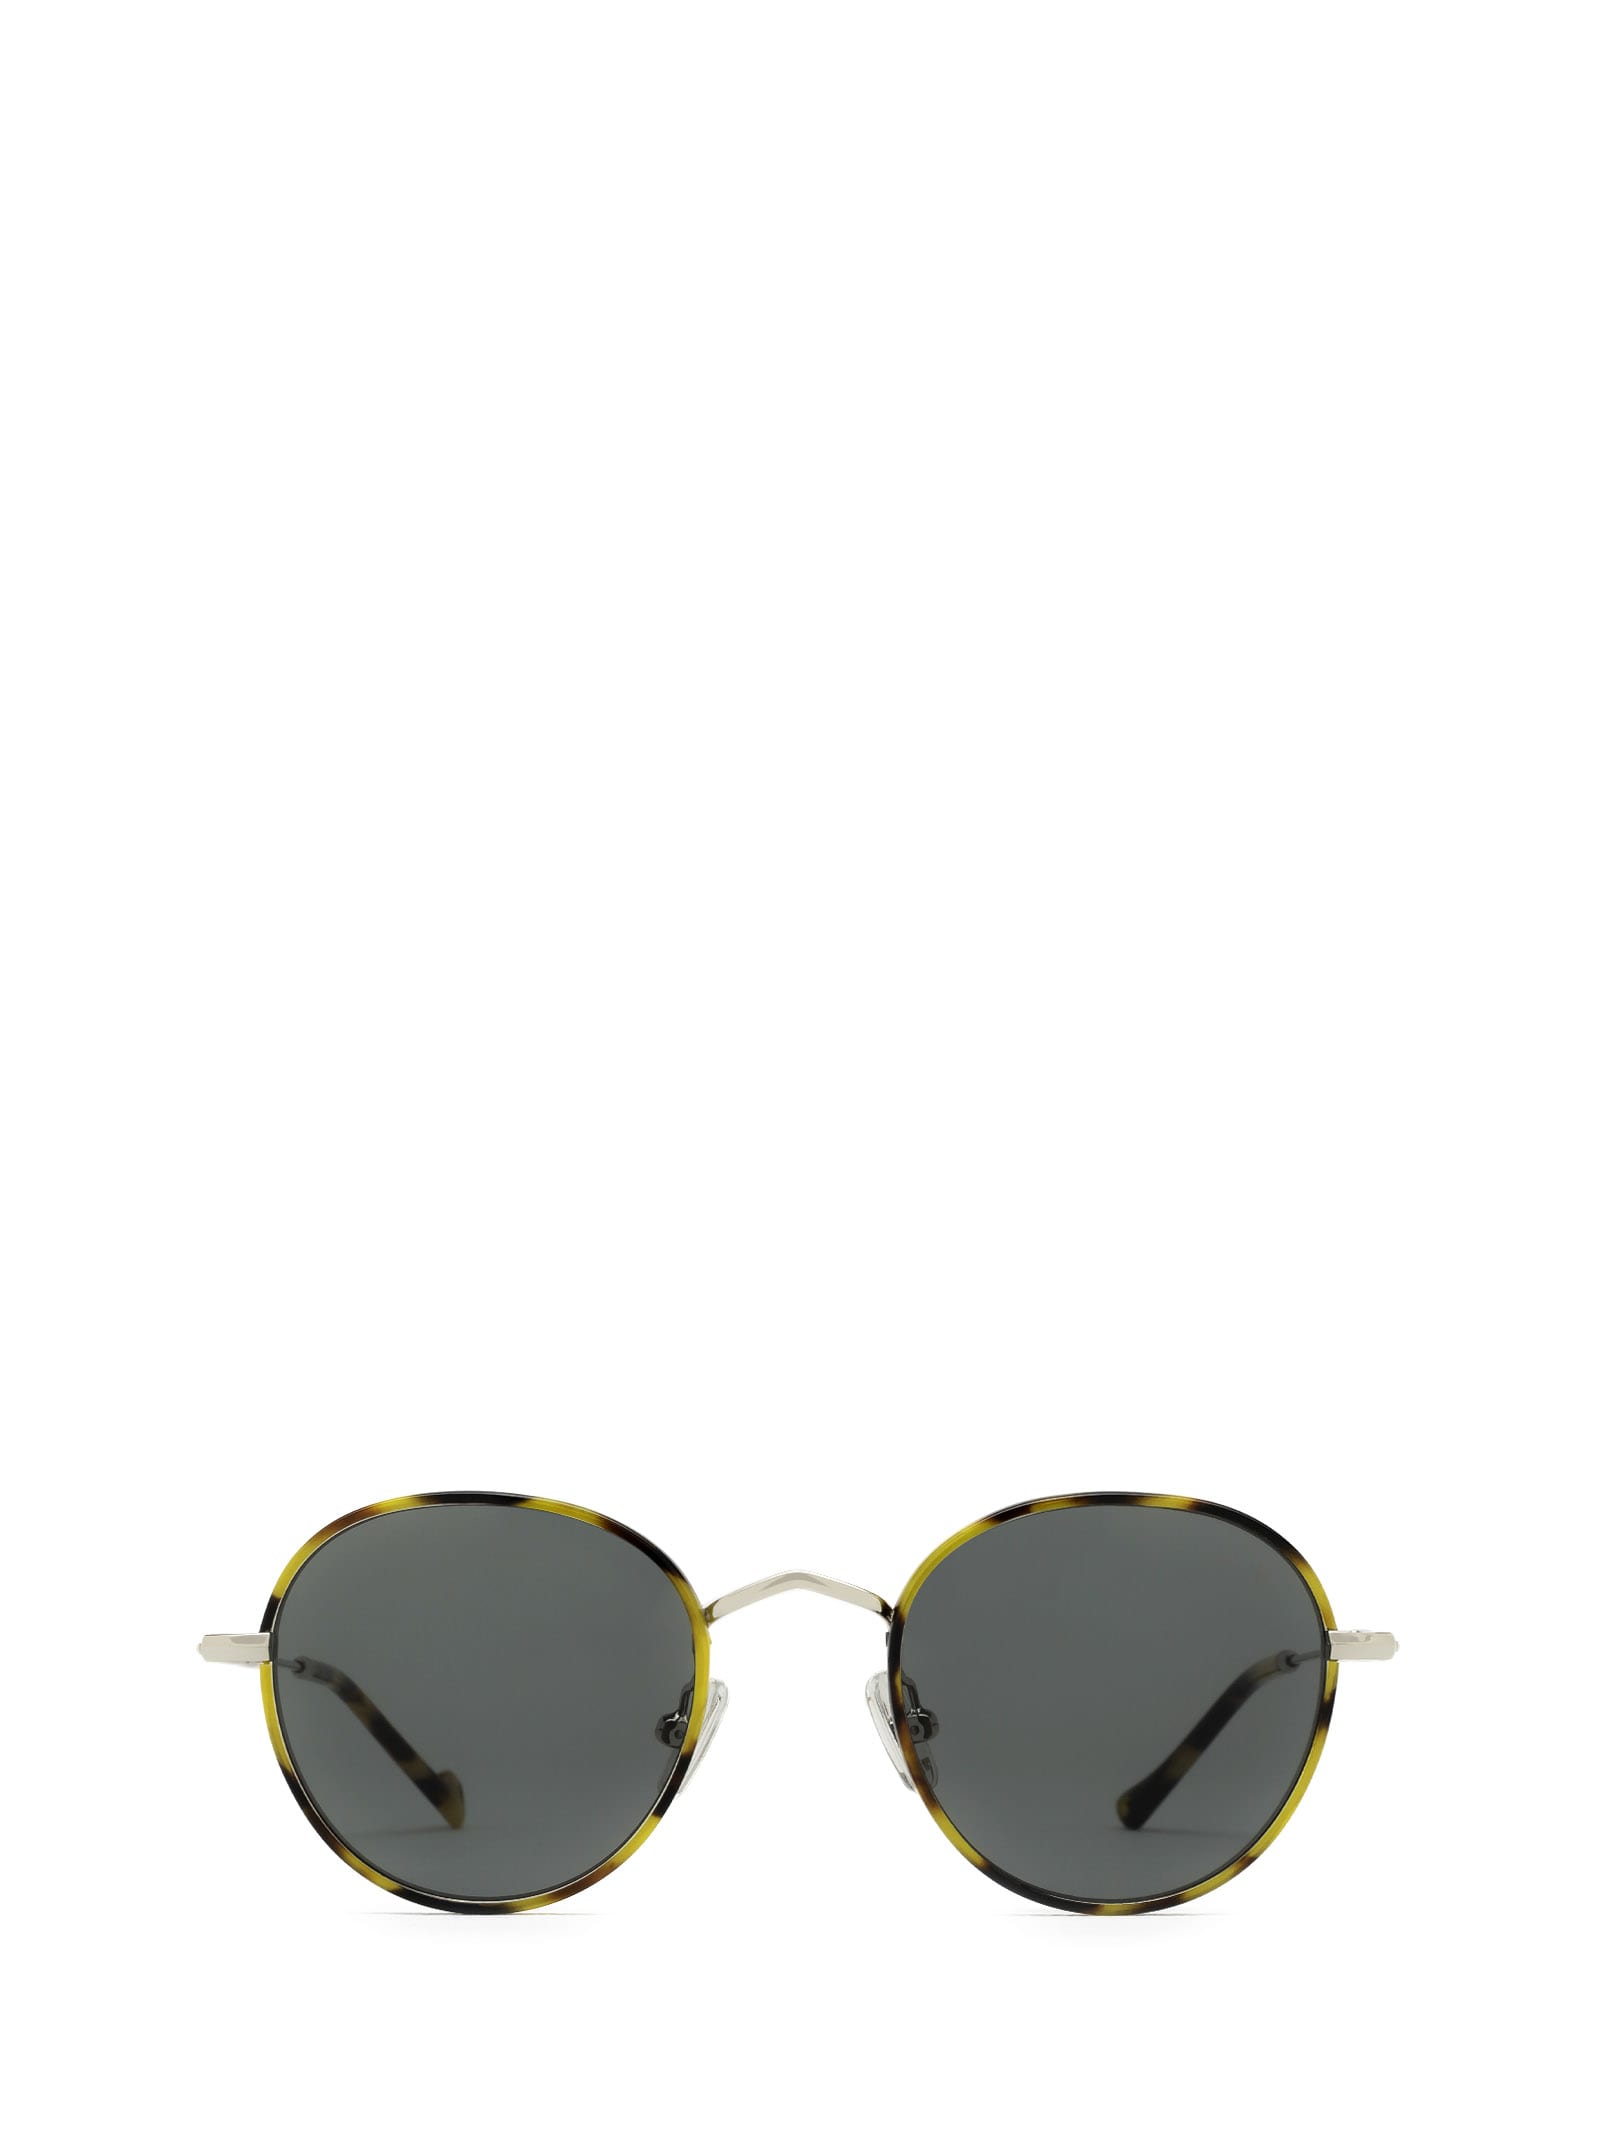 Cinq Havana Sunglasses